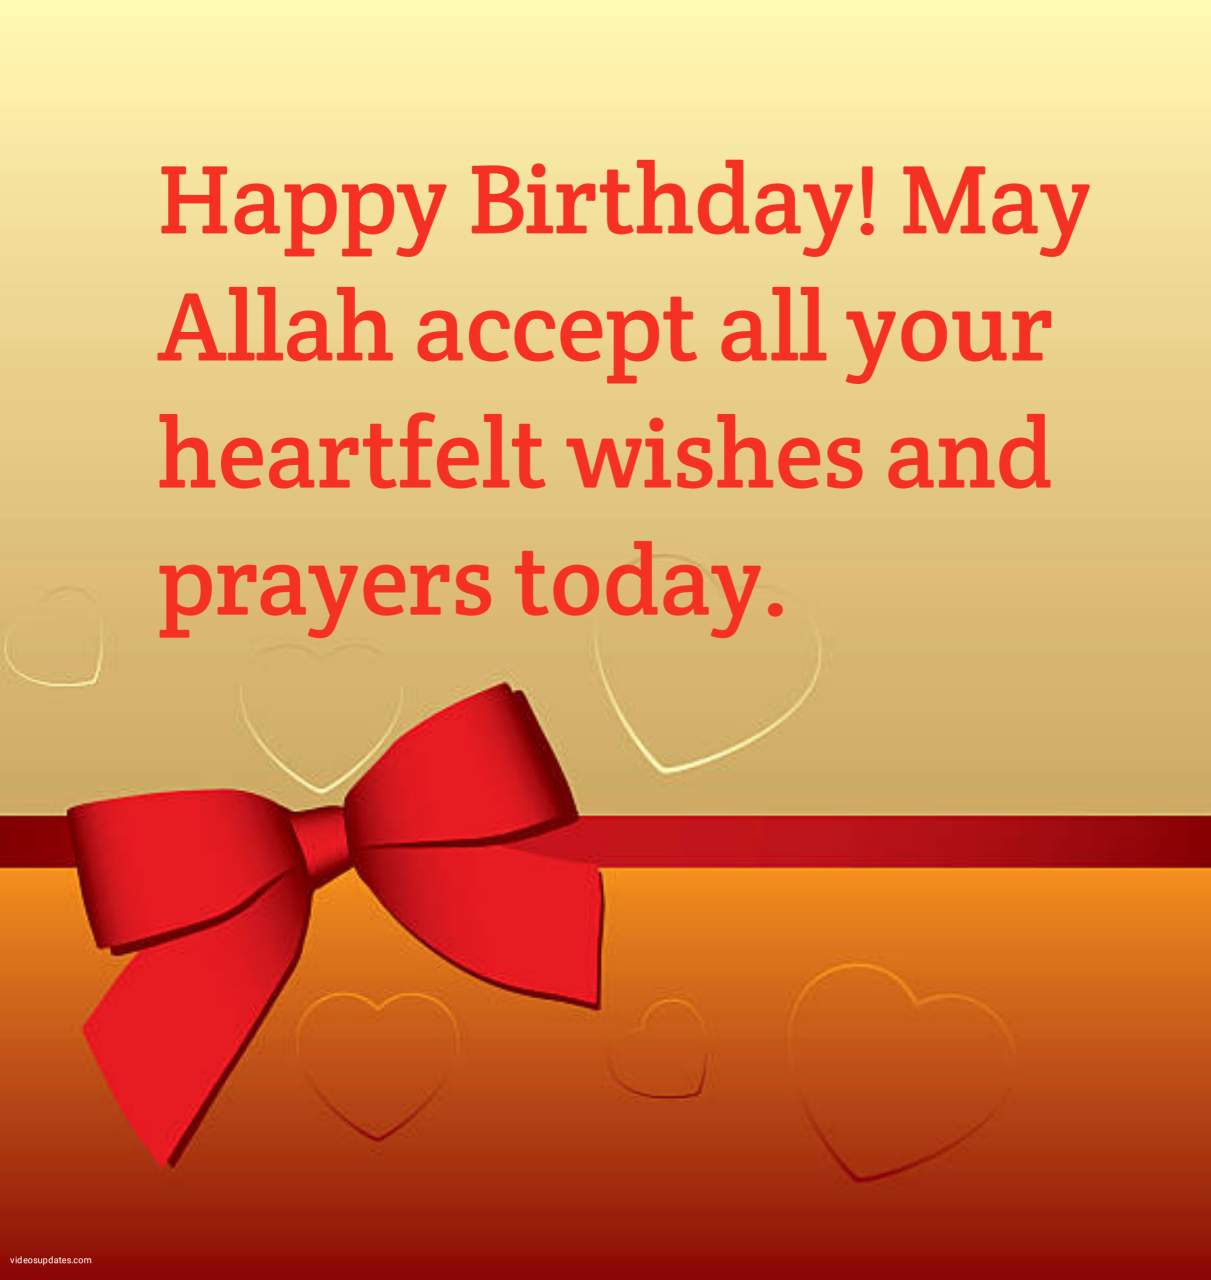 https://videosupdates.com/islamic-birthday-wishes-for-myself/